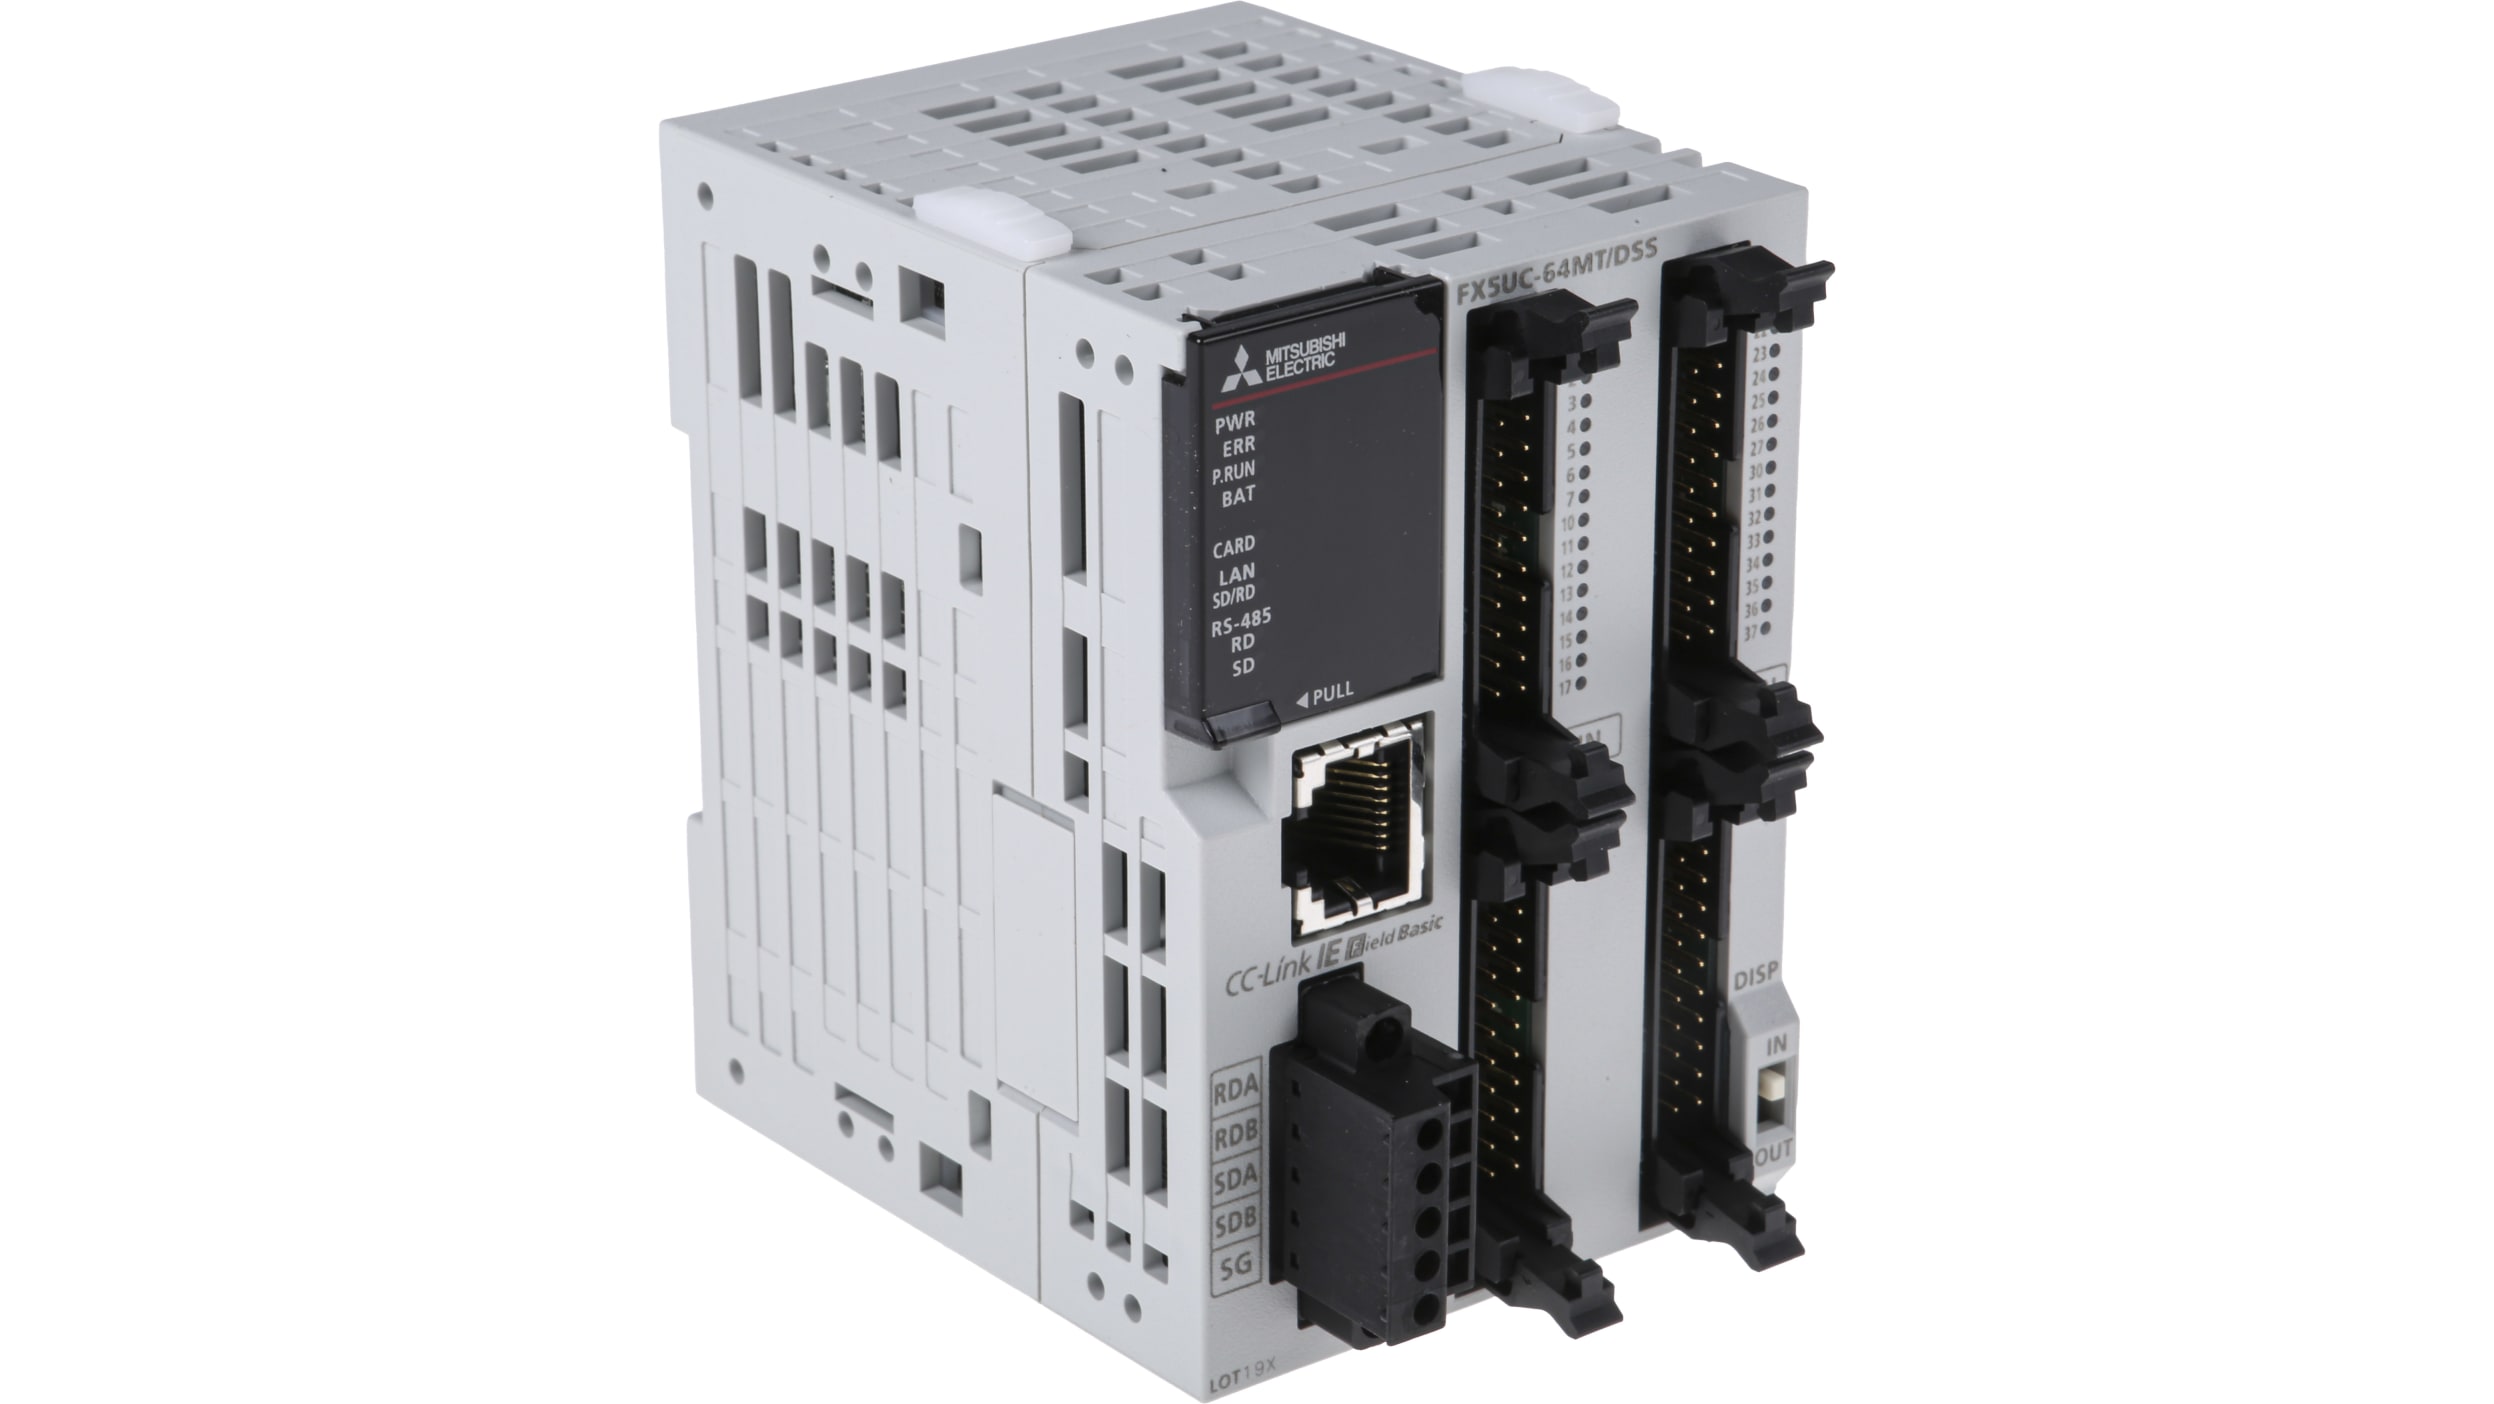 FX5UC-64MT/DSS | 三菱電機 PLC (CPUユニット)ユニット, シリーズ名 